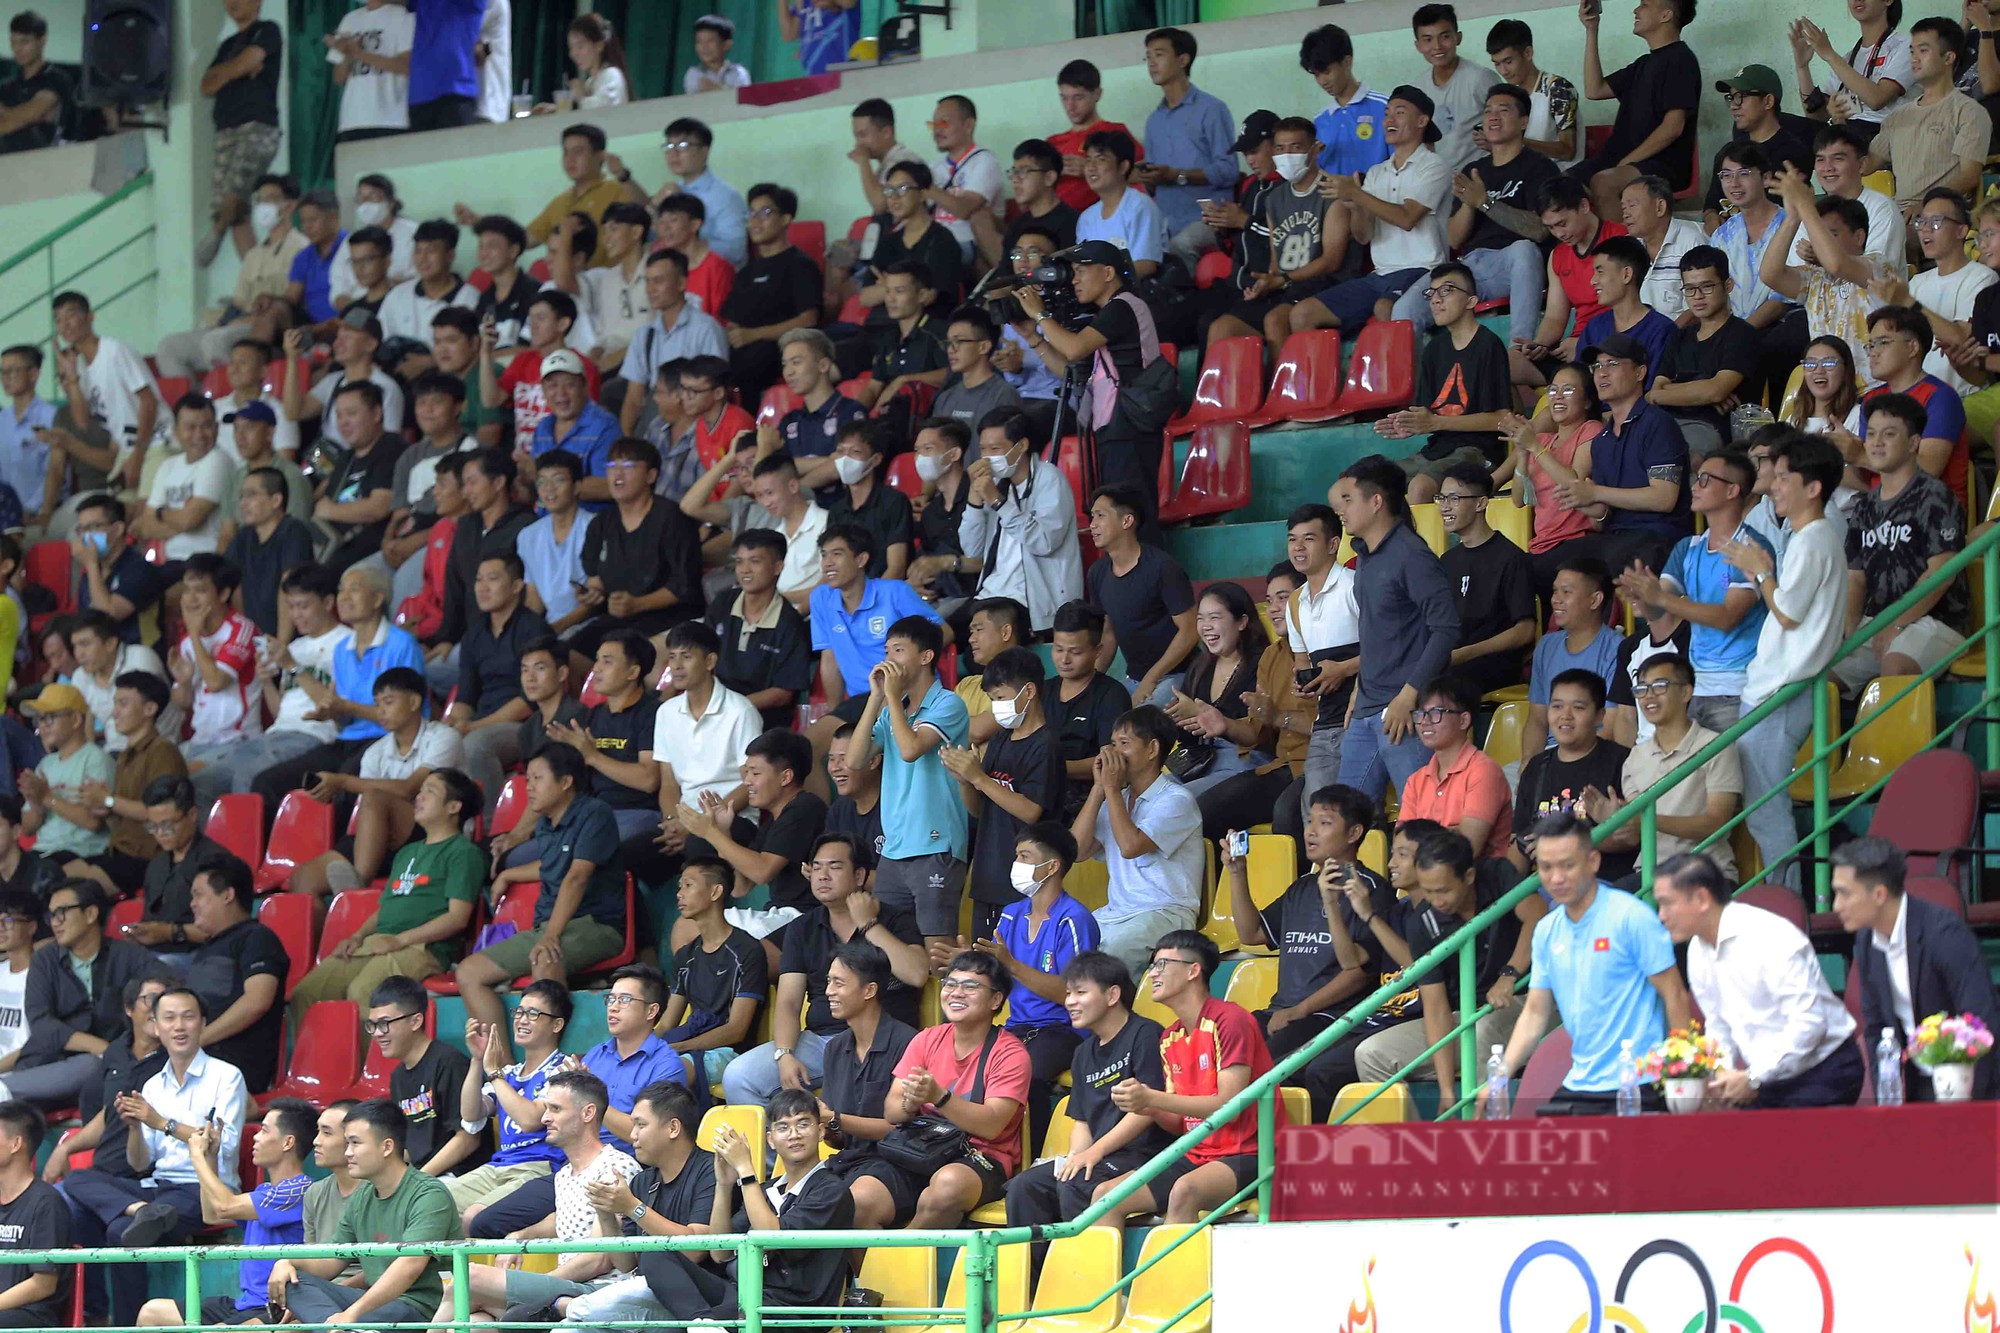 Tân đội trưởng ghi bàn phút cuối, futsal Việt Nam kịch tính cầm hoà đội hạng 4 thế giới - Ảnh 11.